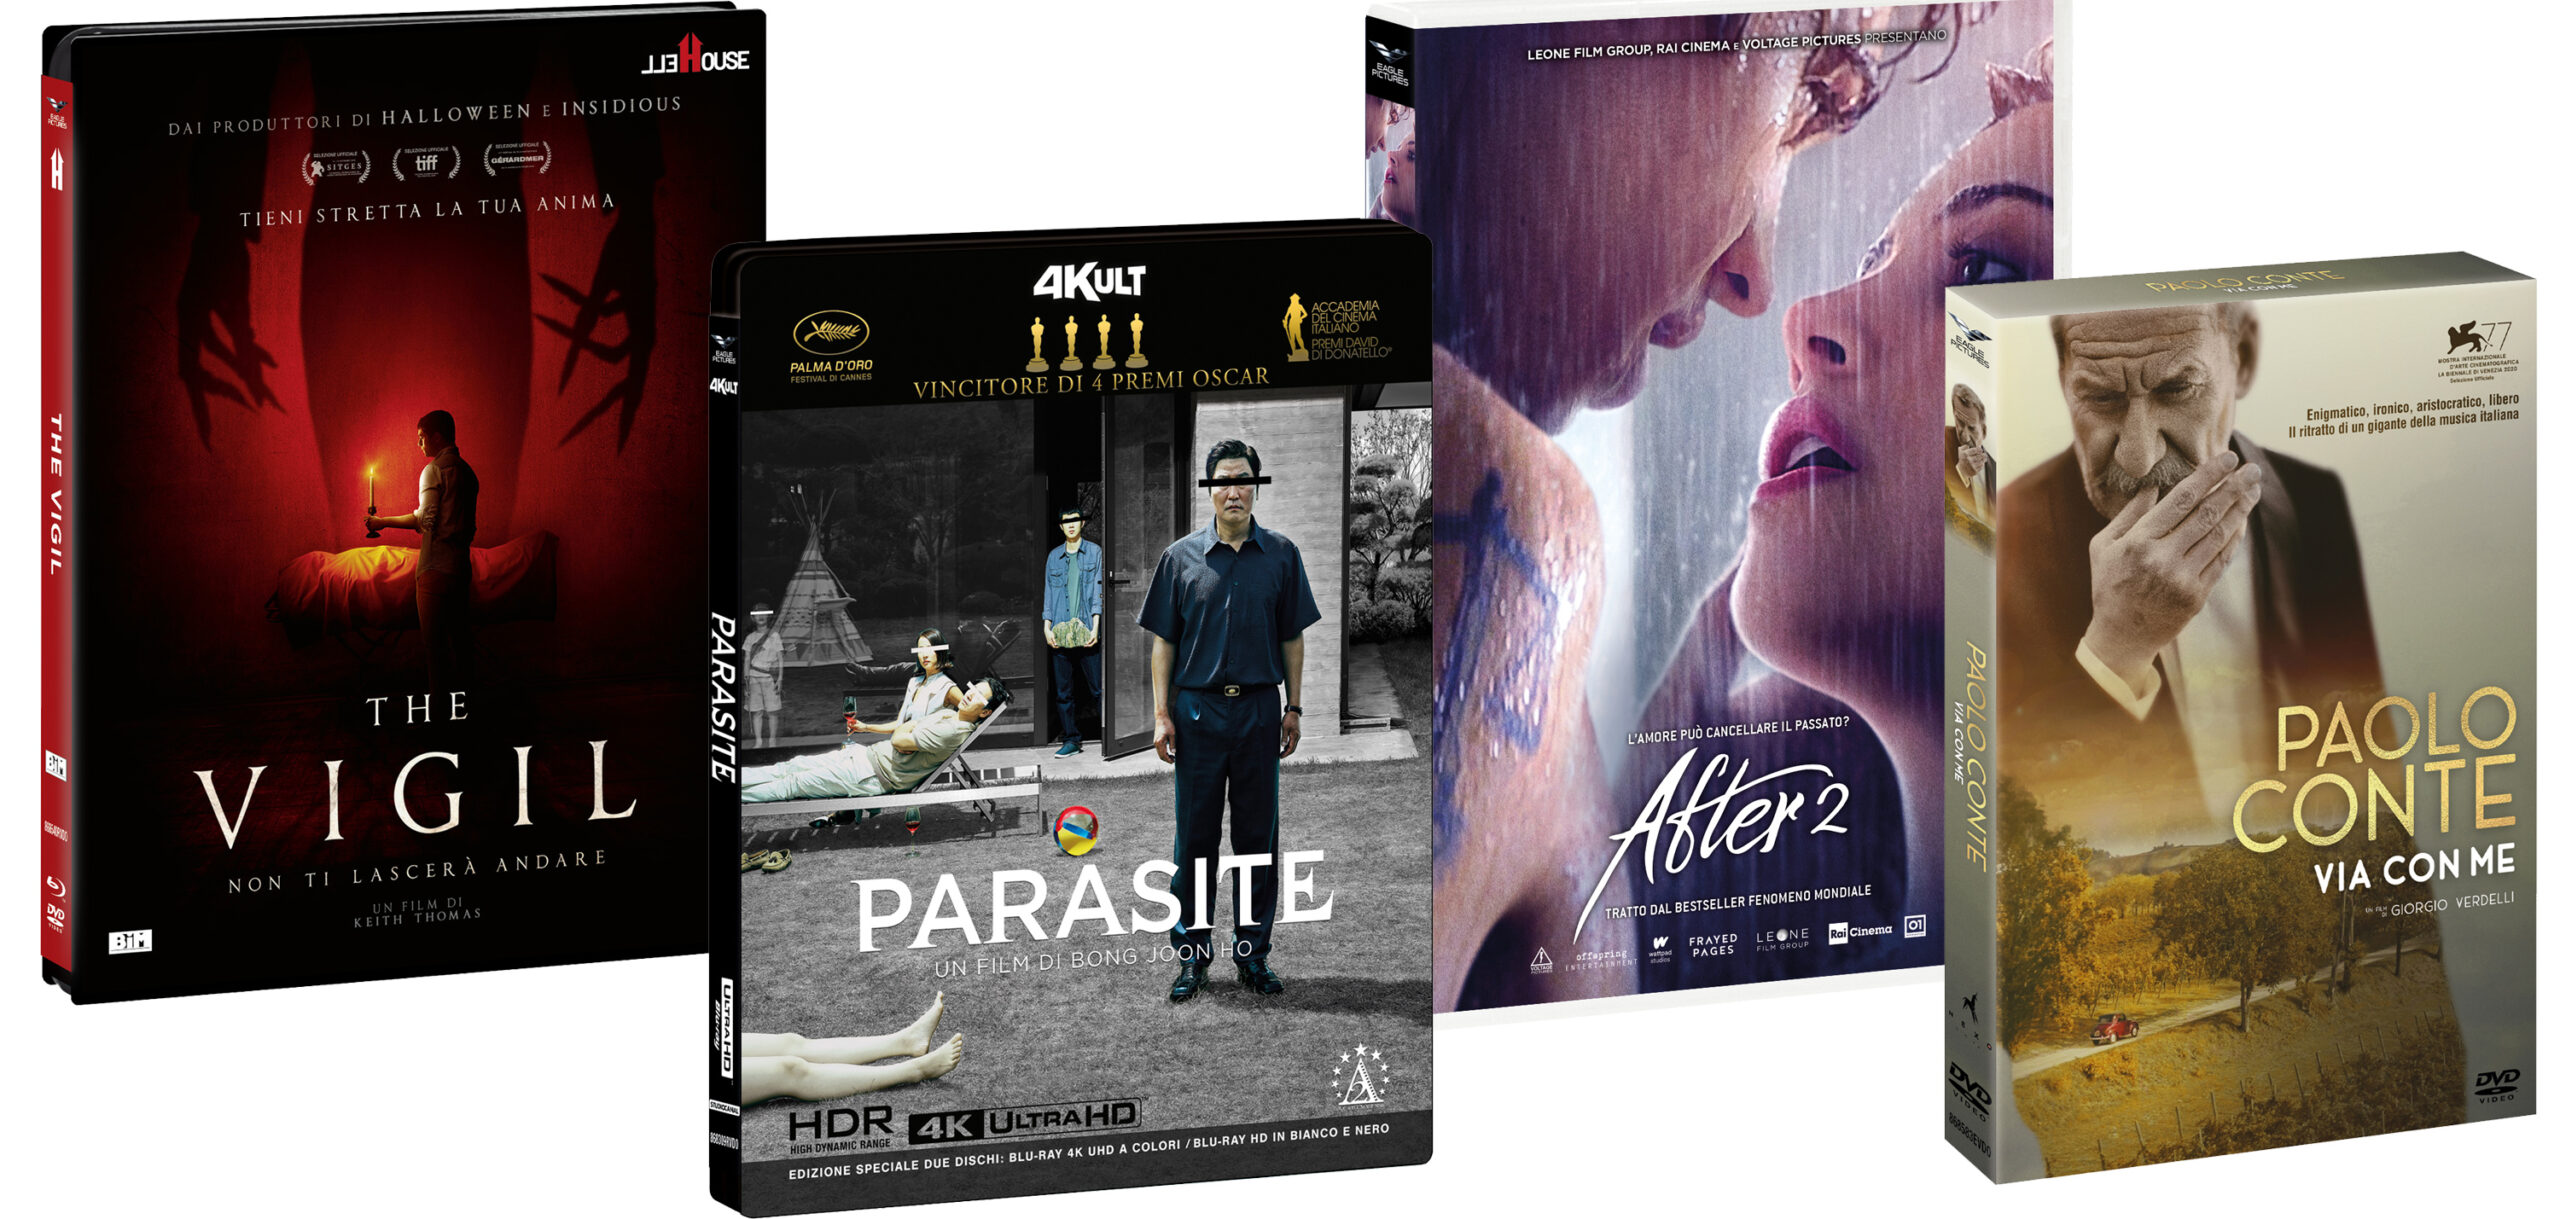 After 2, Parasite in bianco e nero, The Vigil e Paolo Conte, vieni via con me in DVD e BluRay